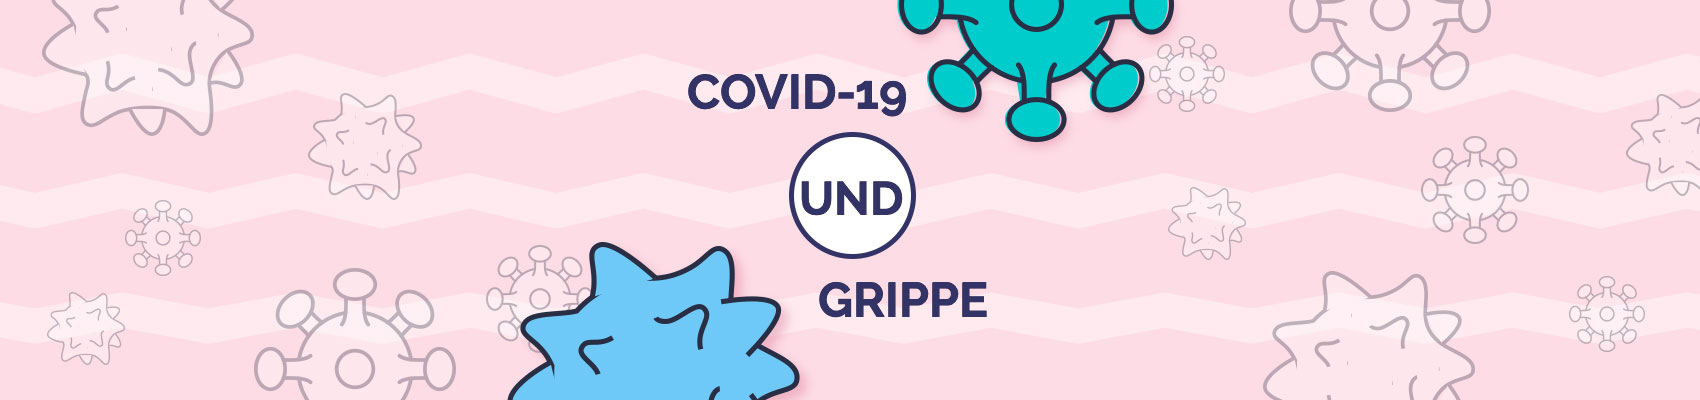 COVID-19 und Grippe – beides sind ernste Erkrankungen mit Gemeinsamkeiten und Unterschieden. In dieser Übersicht erfahren Sie mehr.